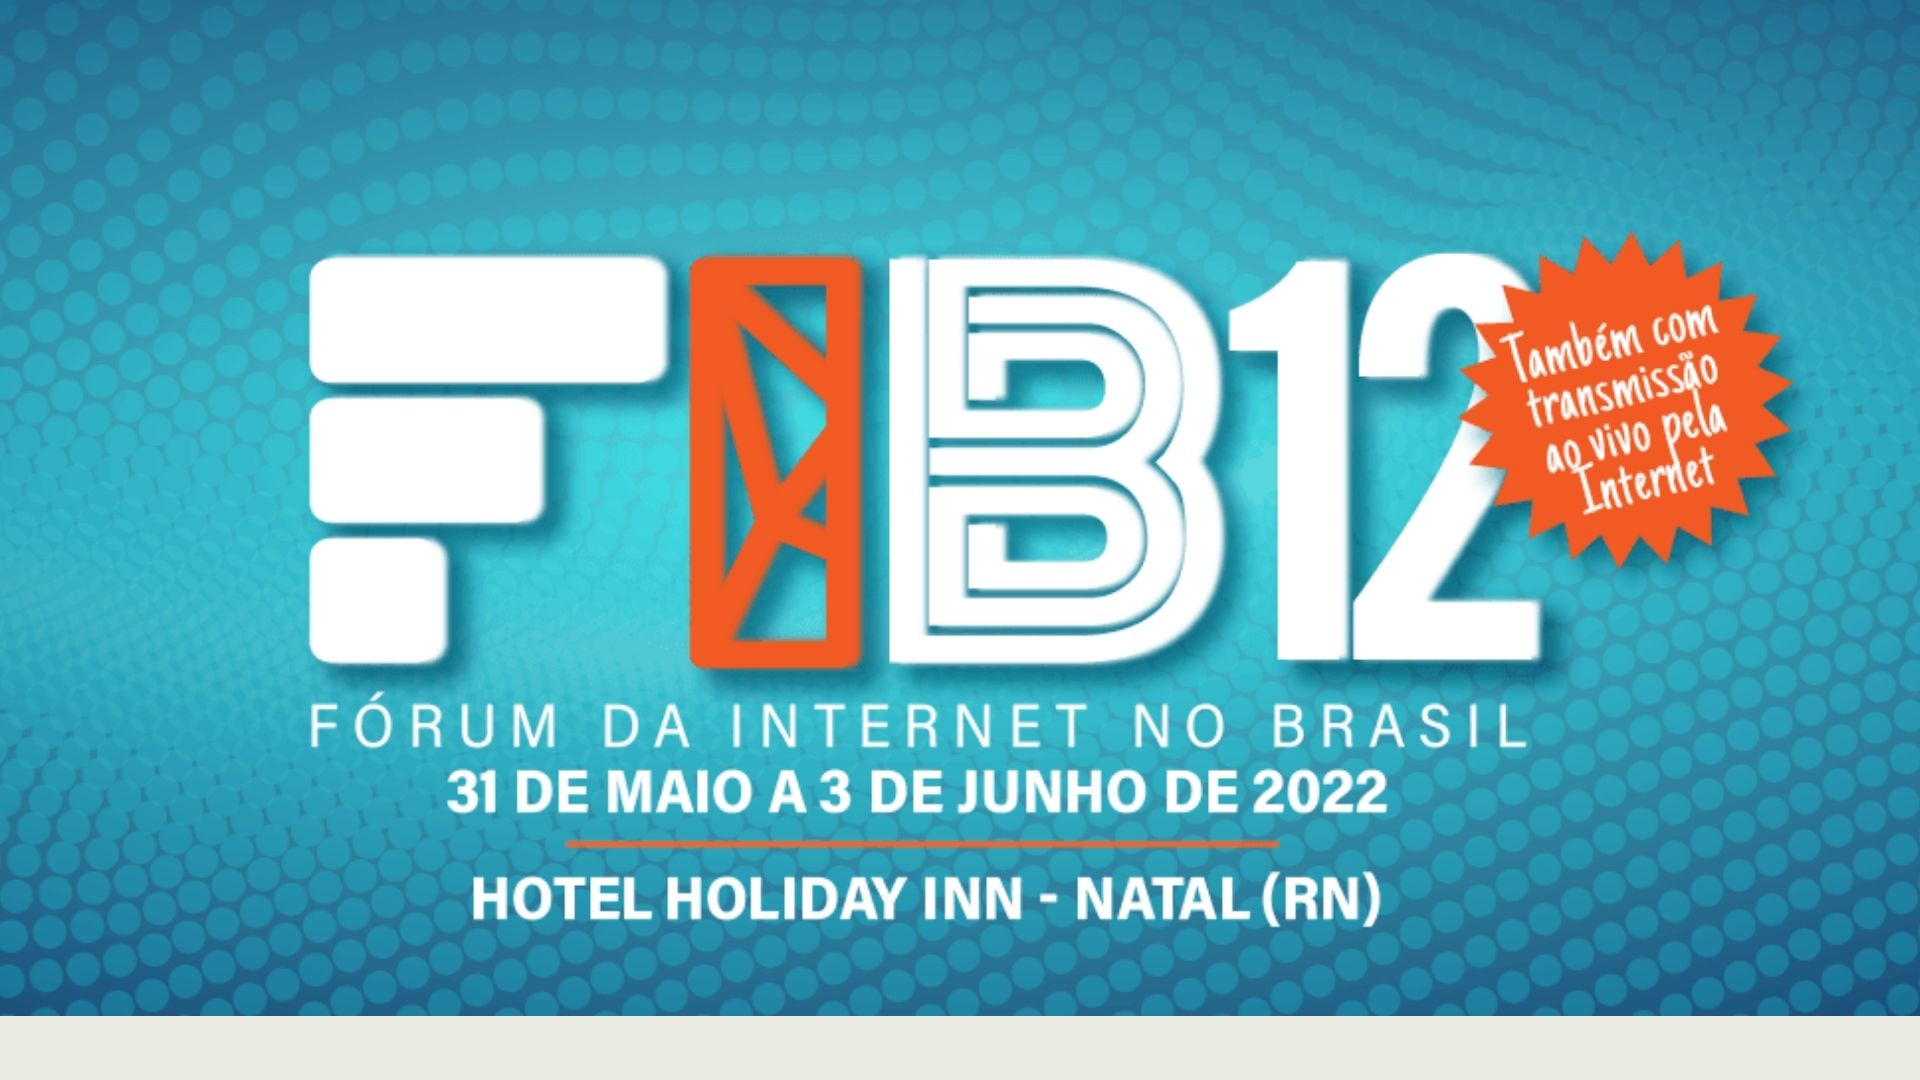 CEDIS promove 2 painéis no Fórum da Internet no Brasil – FIB12